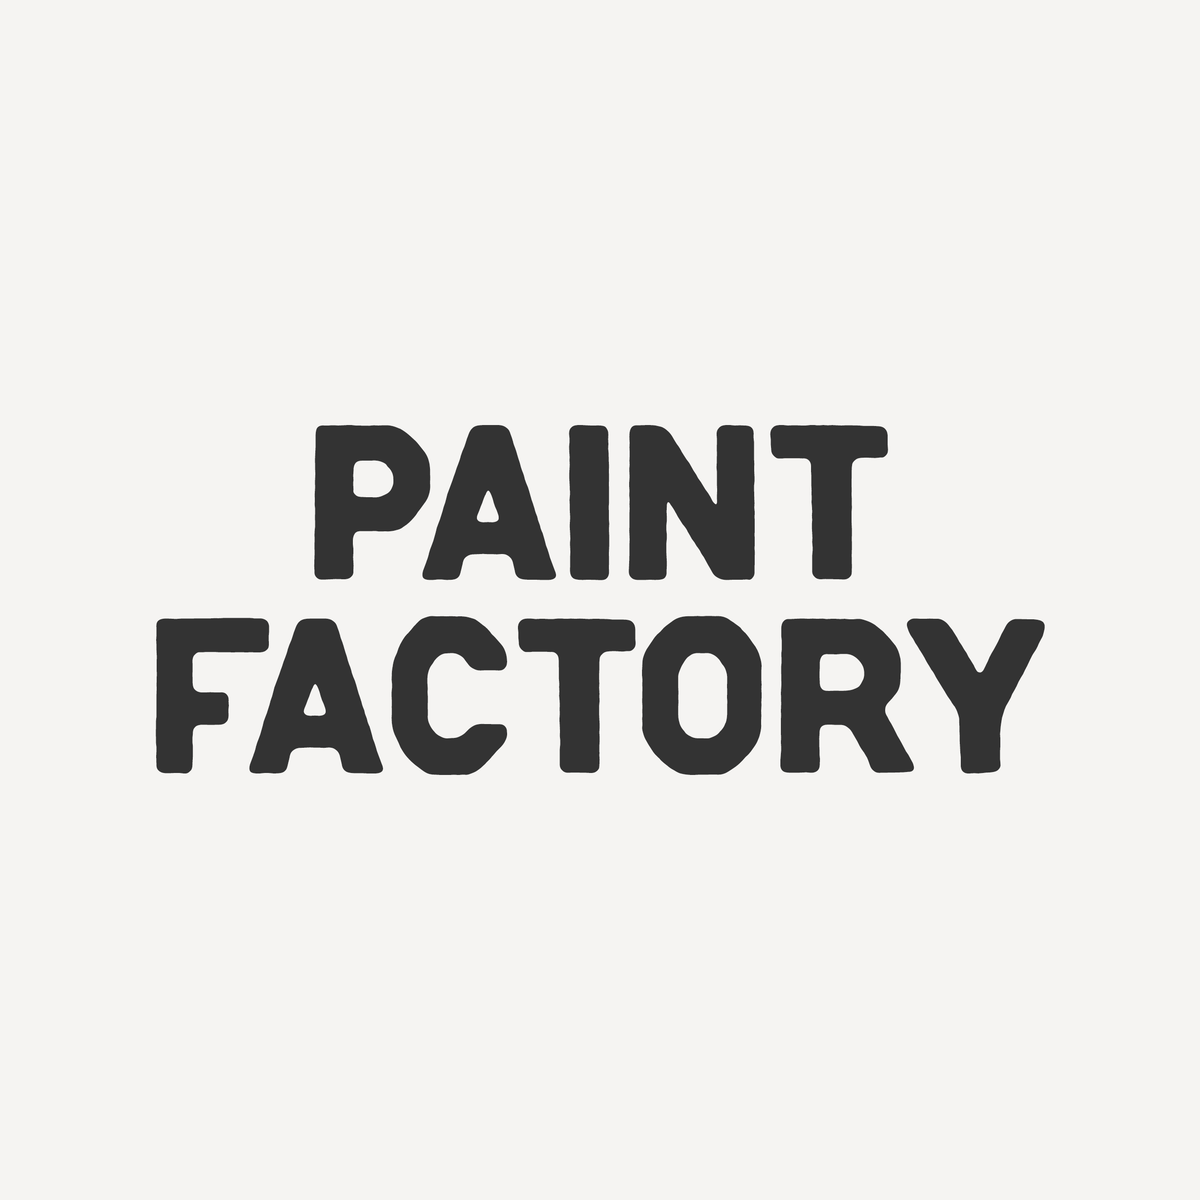 Paint Factory